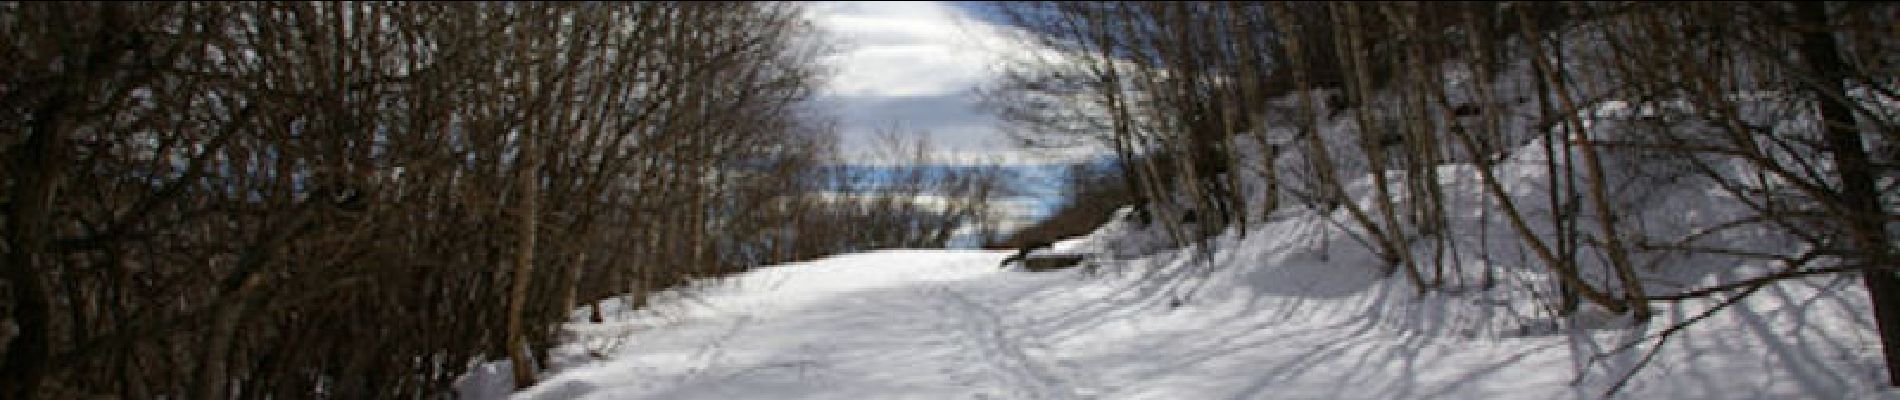 Trail Snowshoes Angoustrine-Villeneuve-des-Escaldes - Sant Marti d'Envalls - Photo